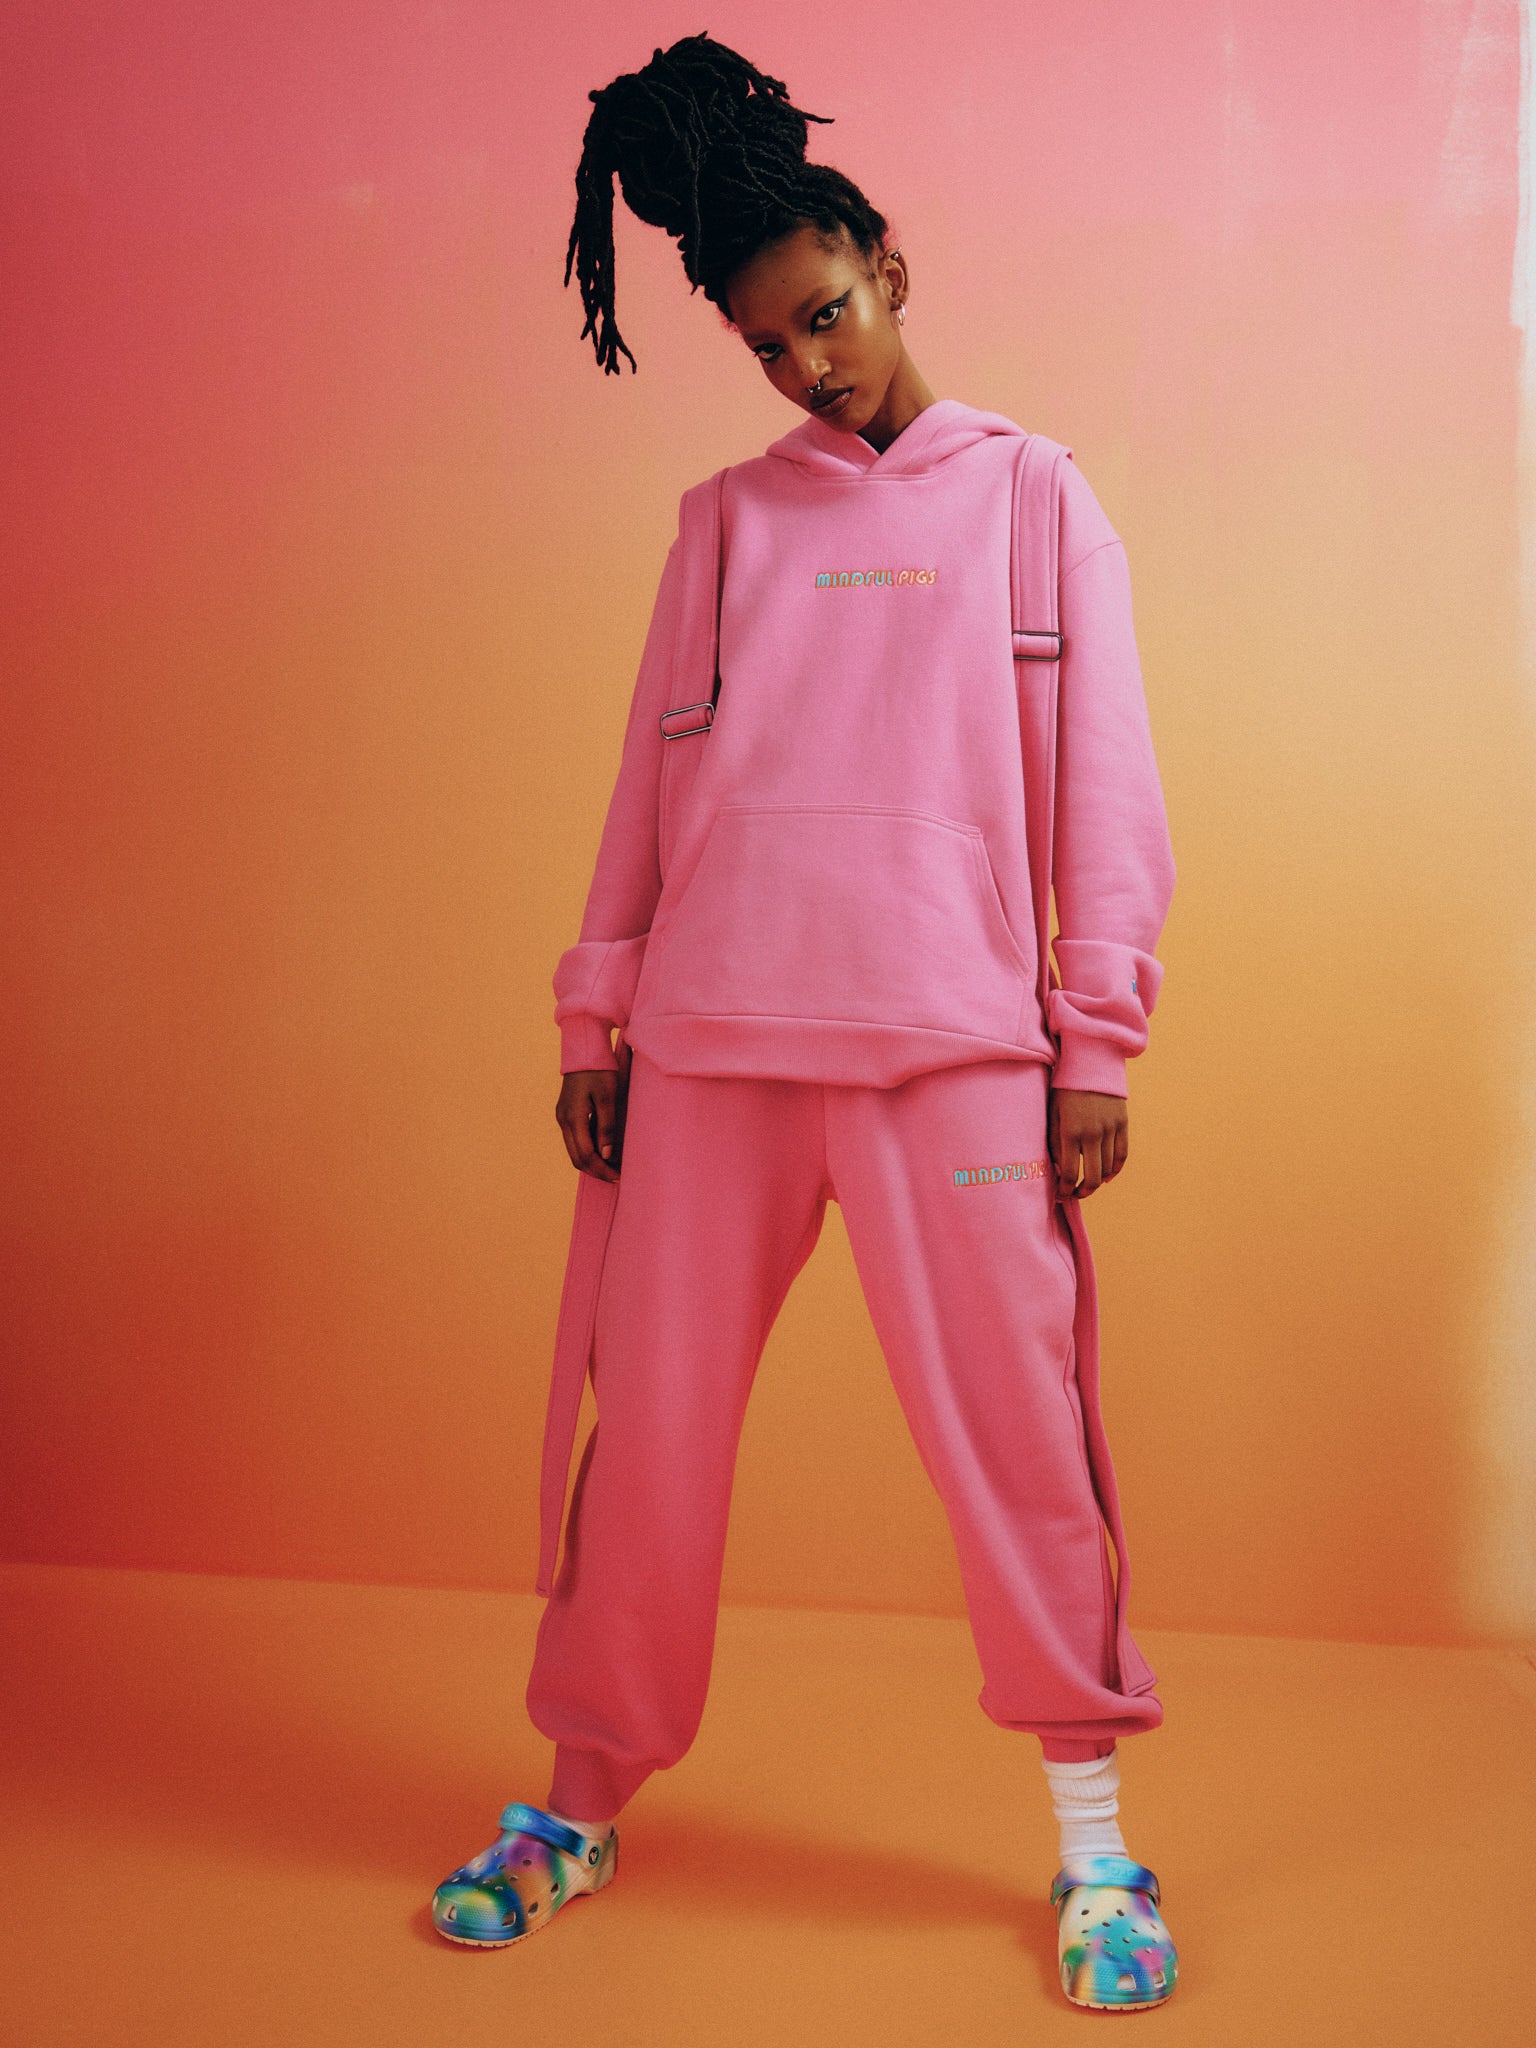 vegan streetwear pink hoodie by mindful pigs brand 